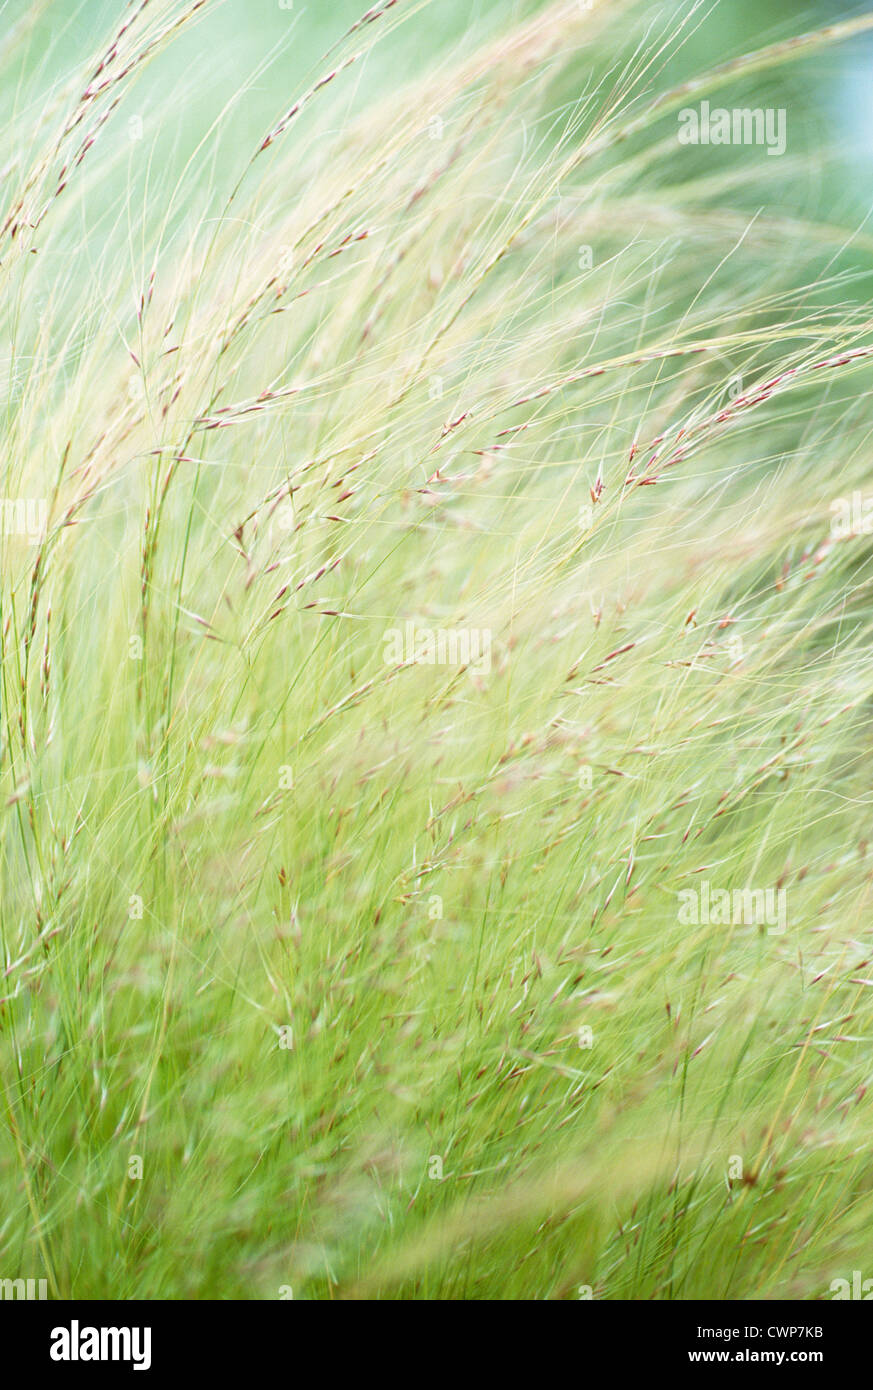 Nasella tenuissima, Stipa tenuissima, Mexican feather grass Stock Photo